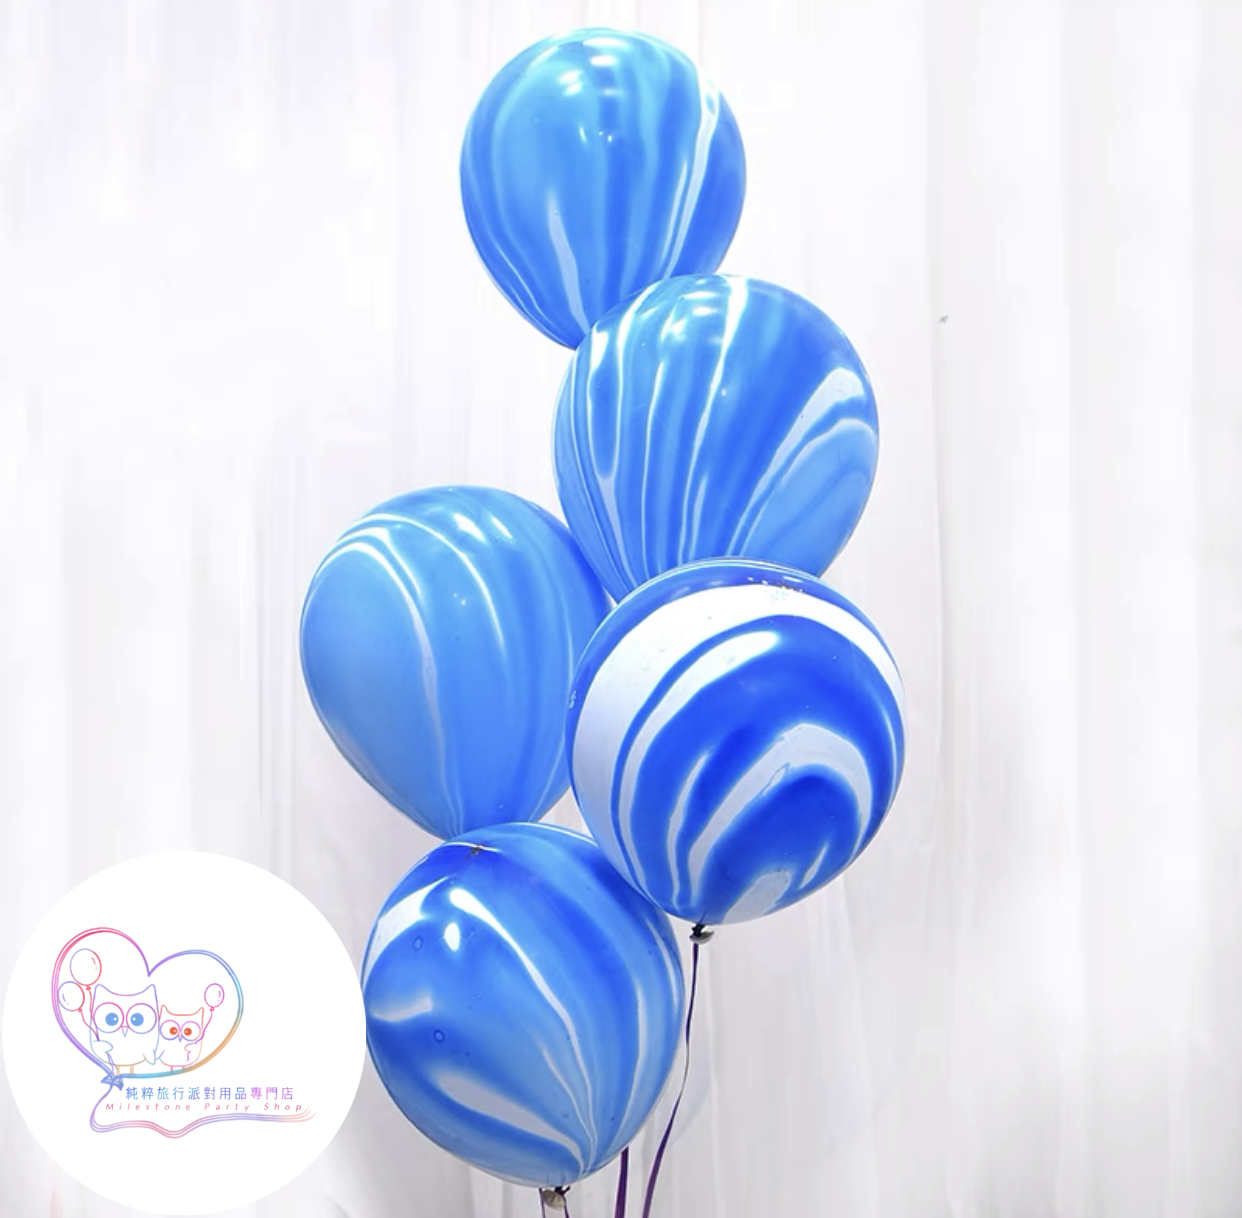 12吋瑪瑙色氣球 (藍色) (1pc) 12LBA2